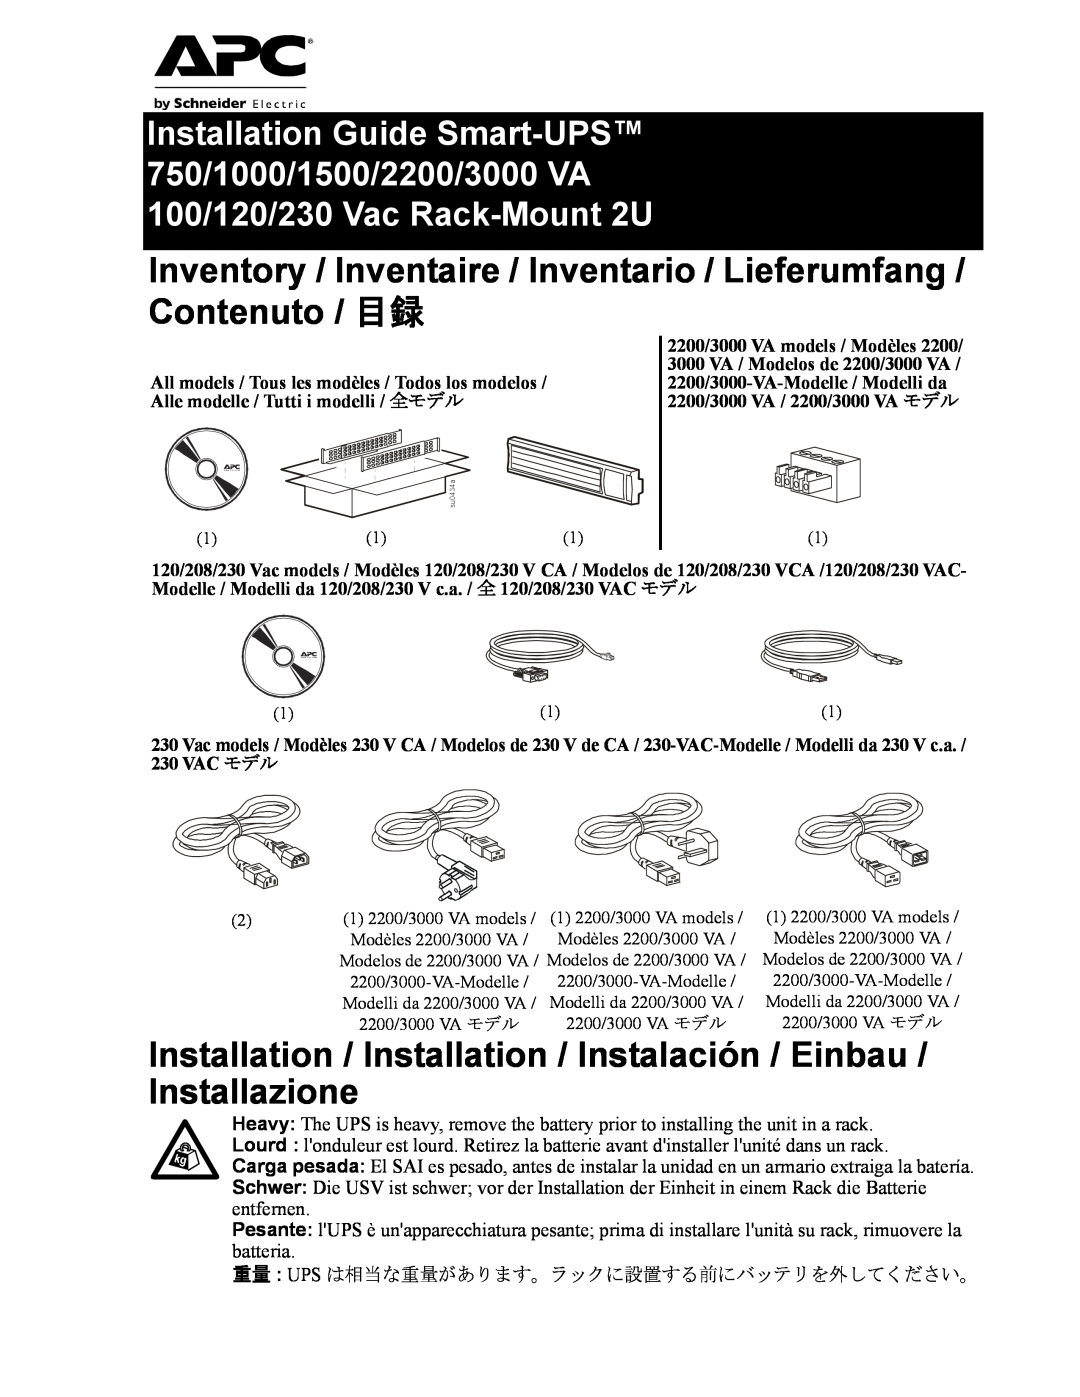 APC SMT750RM2U manual Inventory / Inventaire / Inventario / Lieferumfang / Contenuto / 目録, 100/120/230 Vac Rack-Mount 2U 